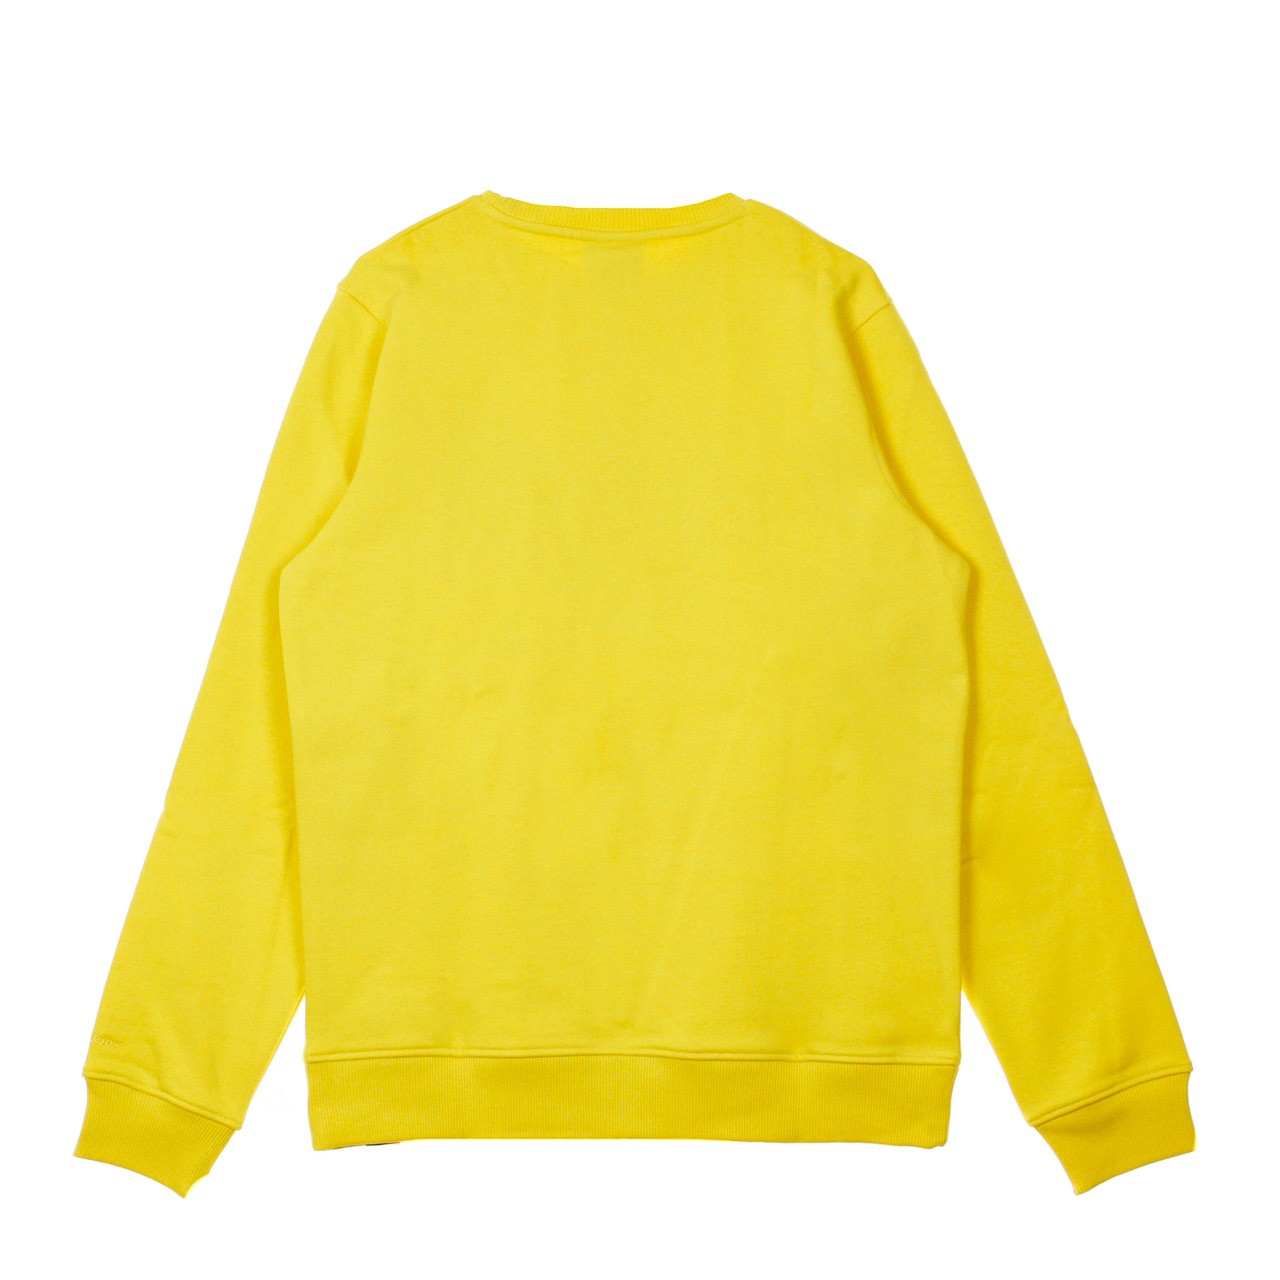 Pittsburgh Spectra Yellow Men's Crewneck Sweatshirt